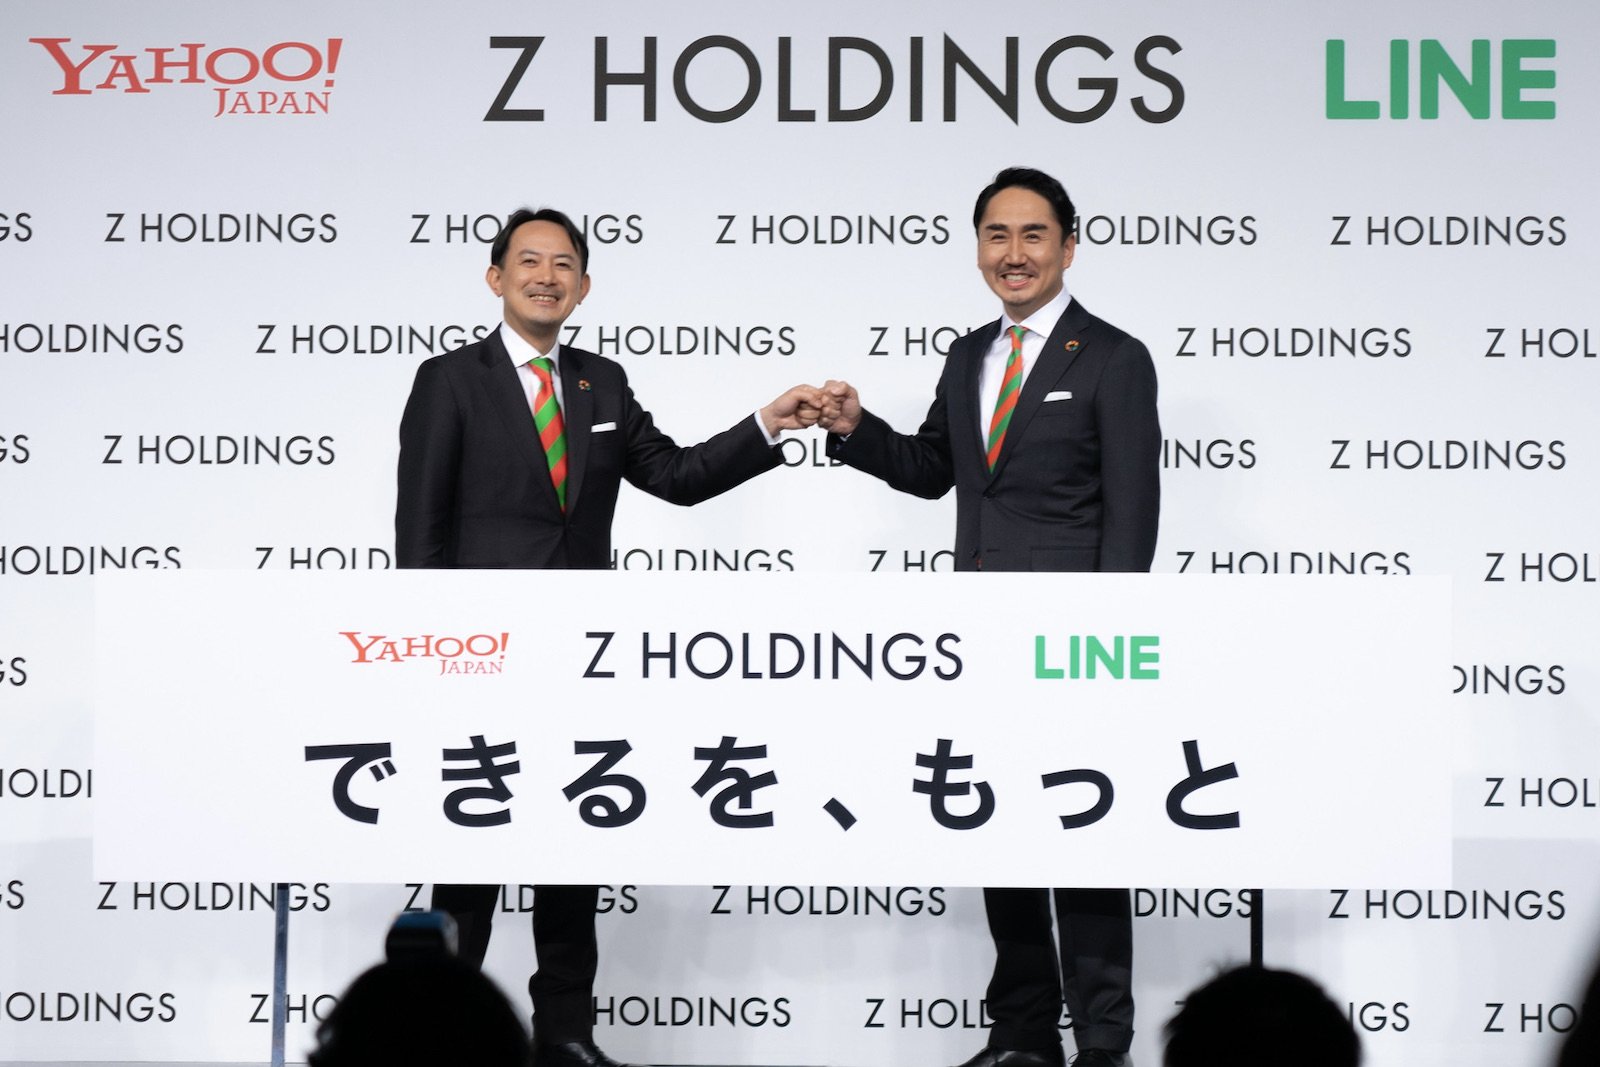 Z HOLDINGS代表取締役社長 Co-CEOの川邊健太郎氏（ヤフー社長CEO、左）と、代表取締役 Co-CEOに就任した出澤剛氏（LINE社長CEO）